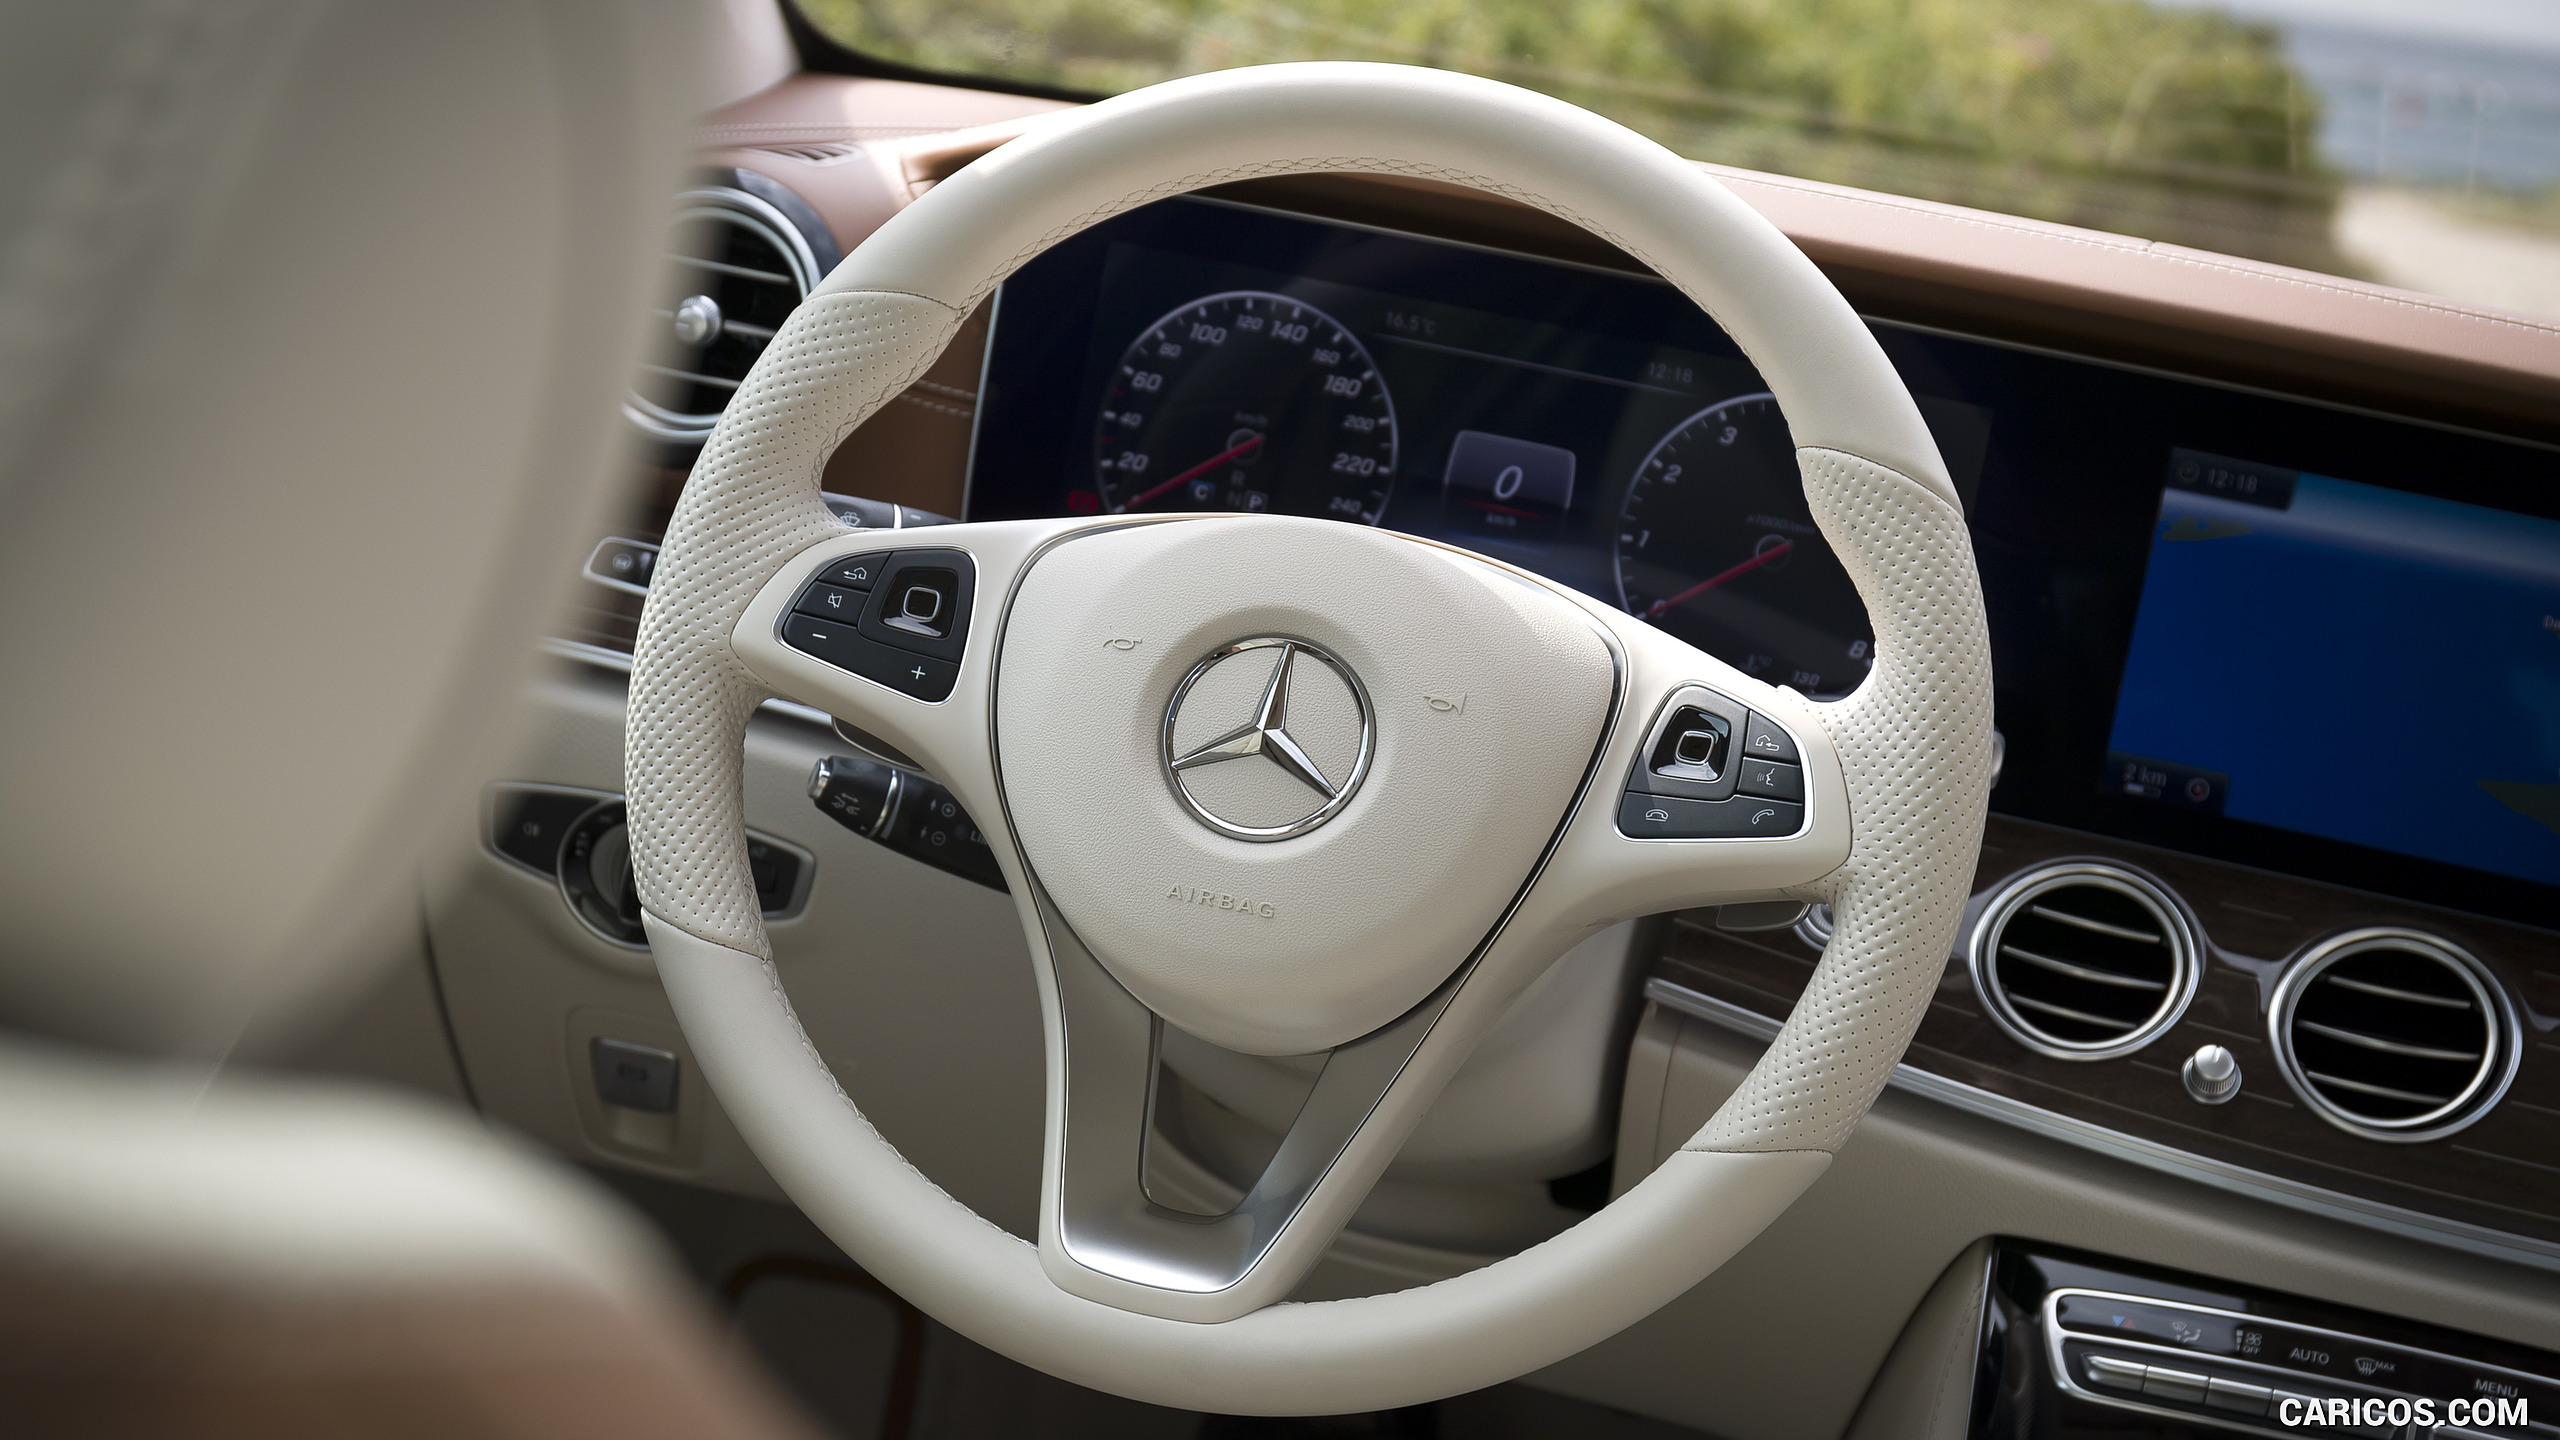 2017 Mercedes-Benz E-Class E400 Estate - Interior, Steering Wheel, #106 of 110